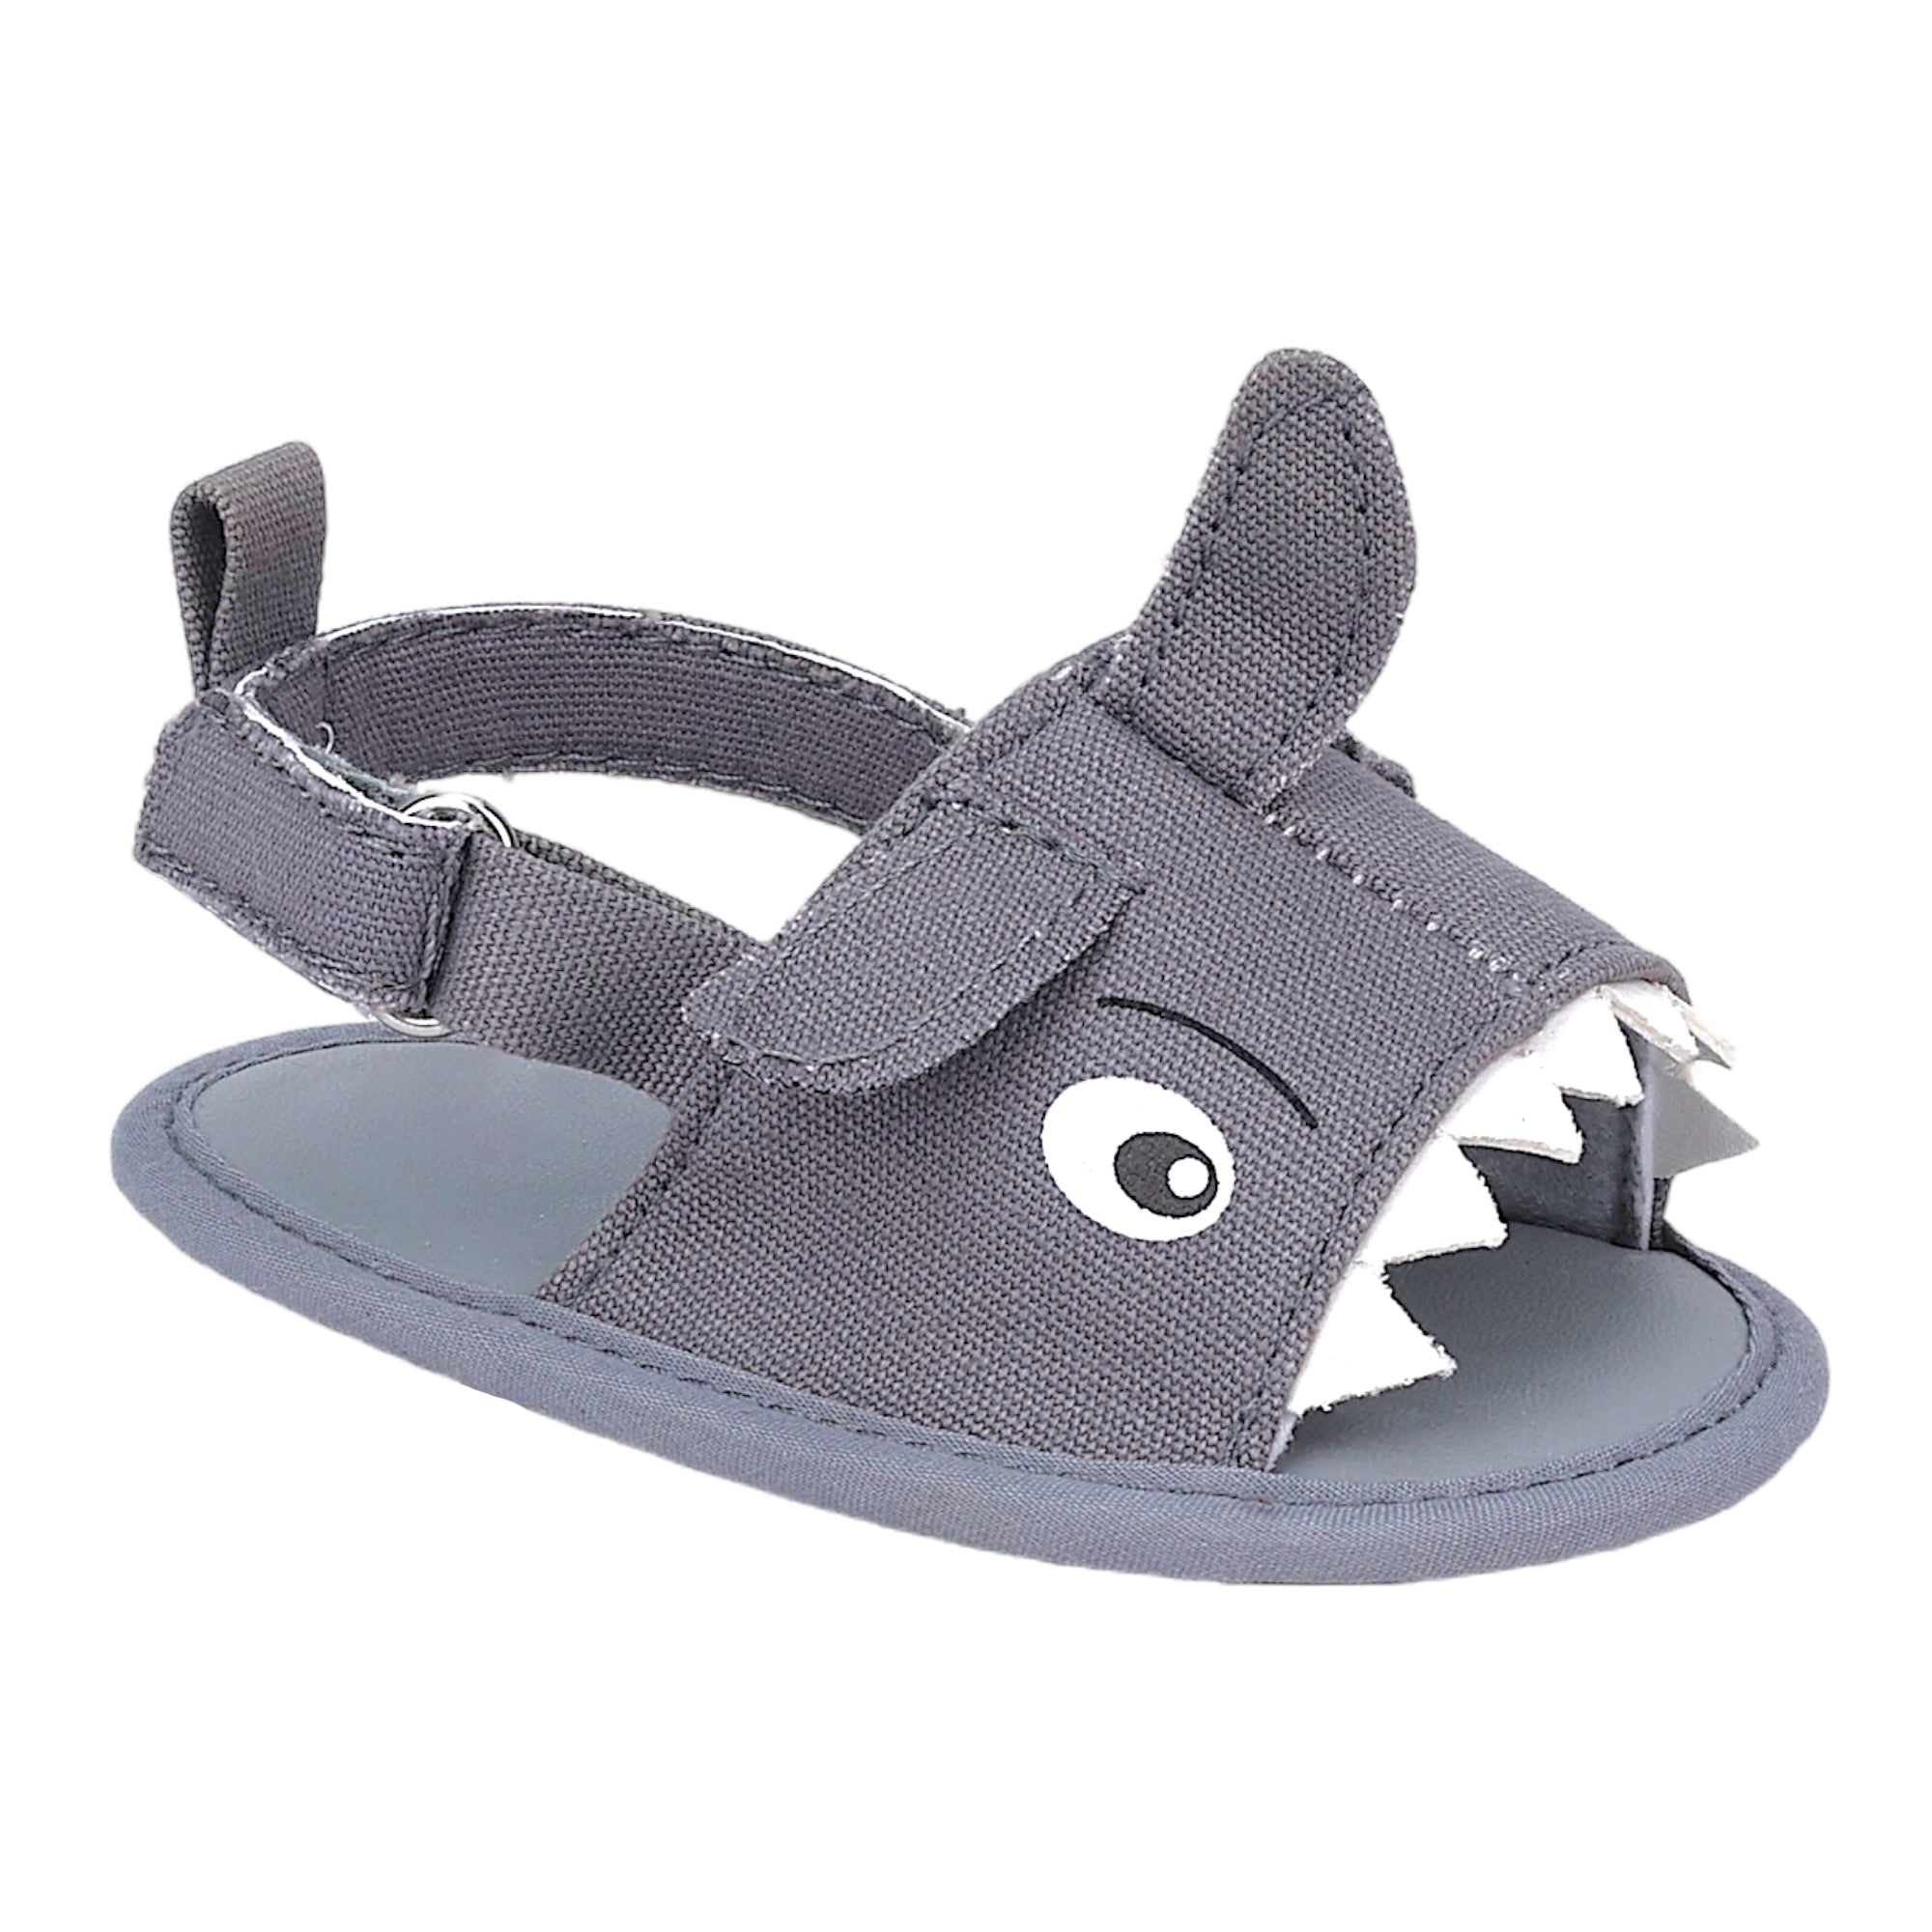 Baby Moo 3D Shark Doo Doo Doo Velcro Straps Anti-Skid Sandals - Grey